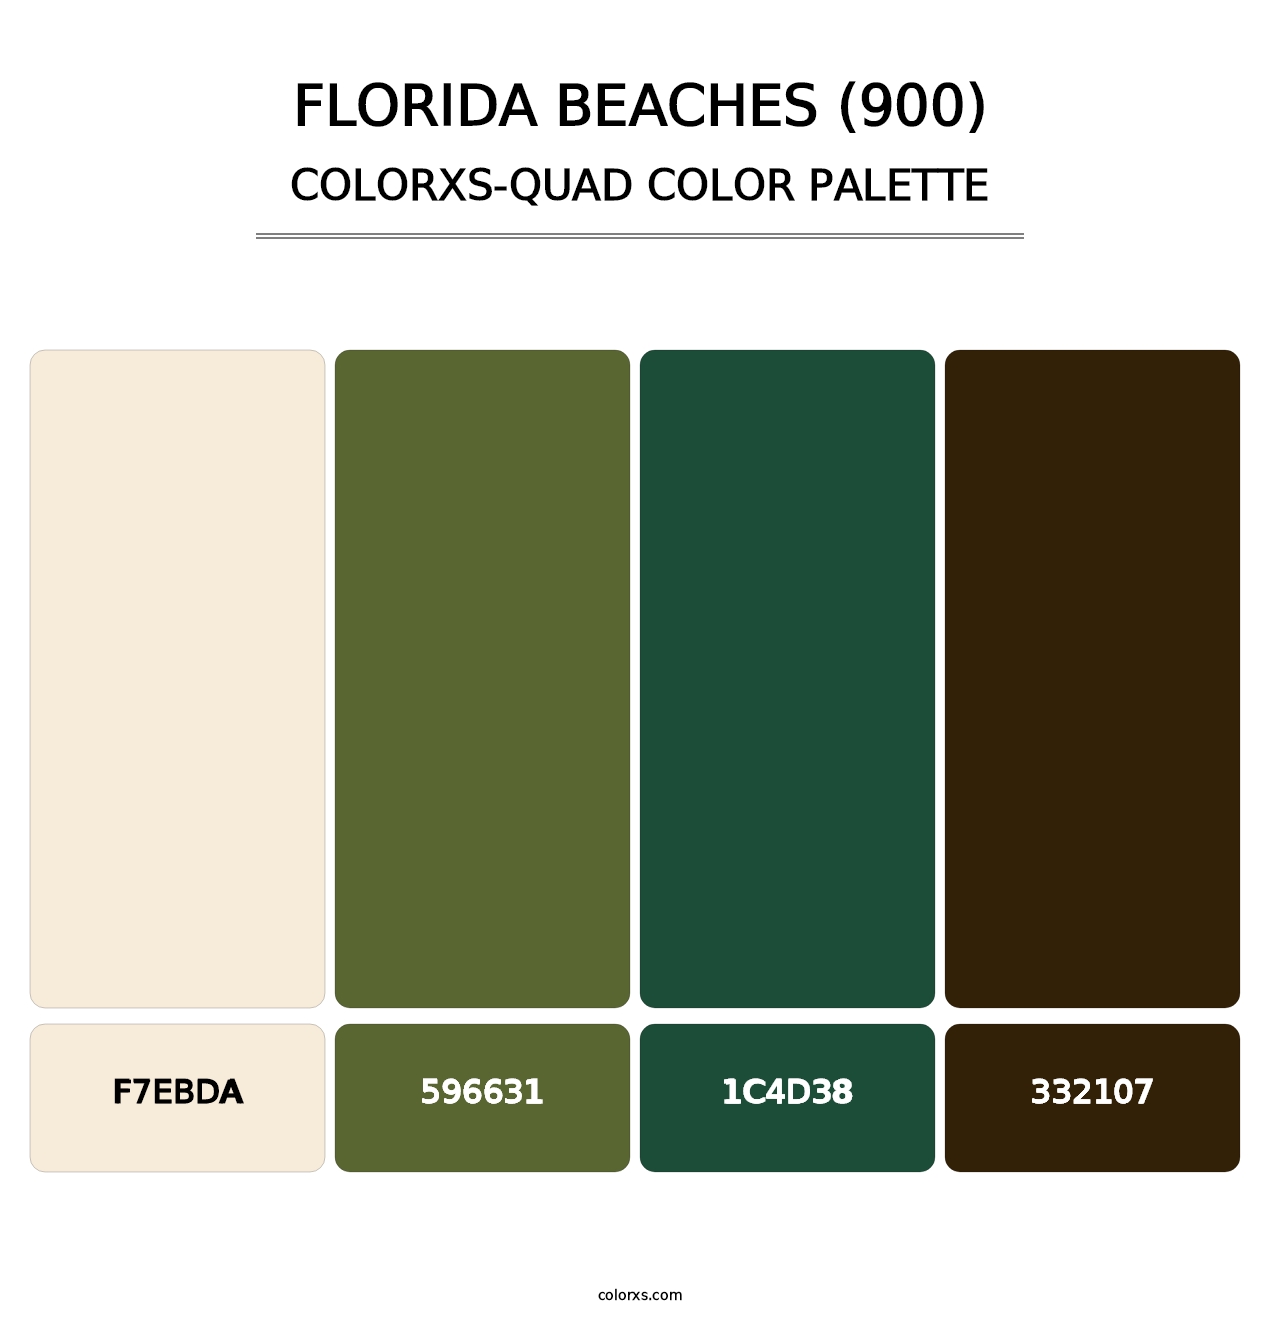 Florida Beaches (900) - Colorxs Quad Palette